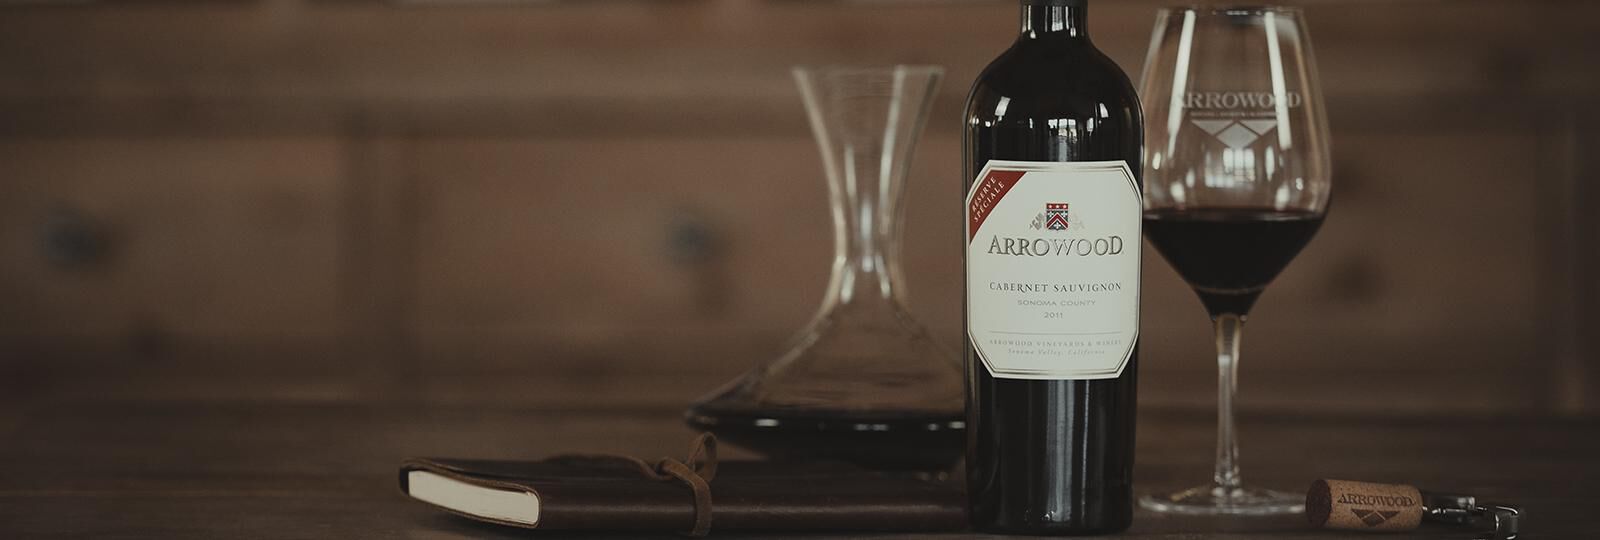 A bottle of Arrowood wine